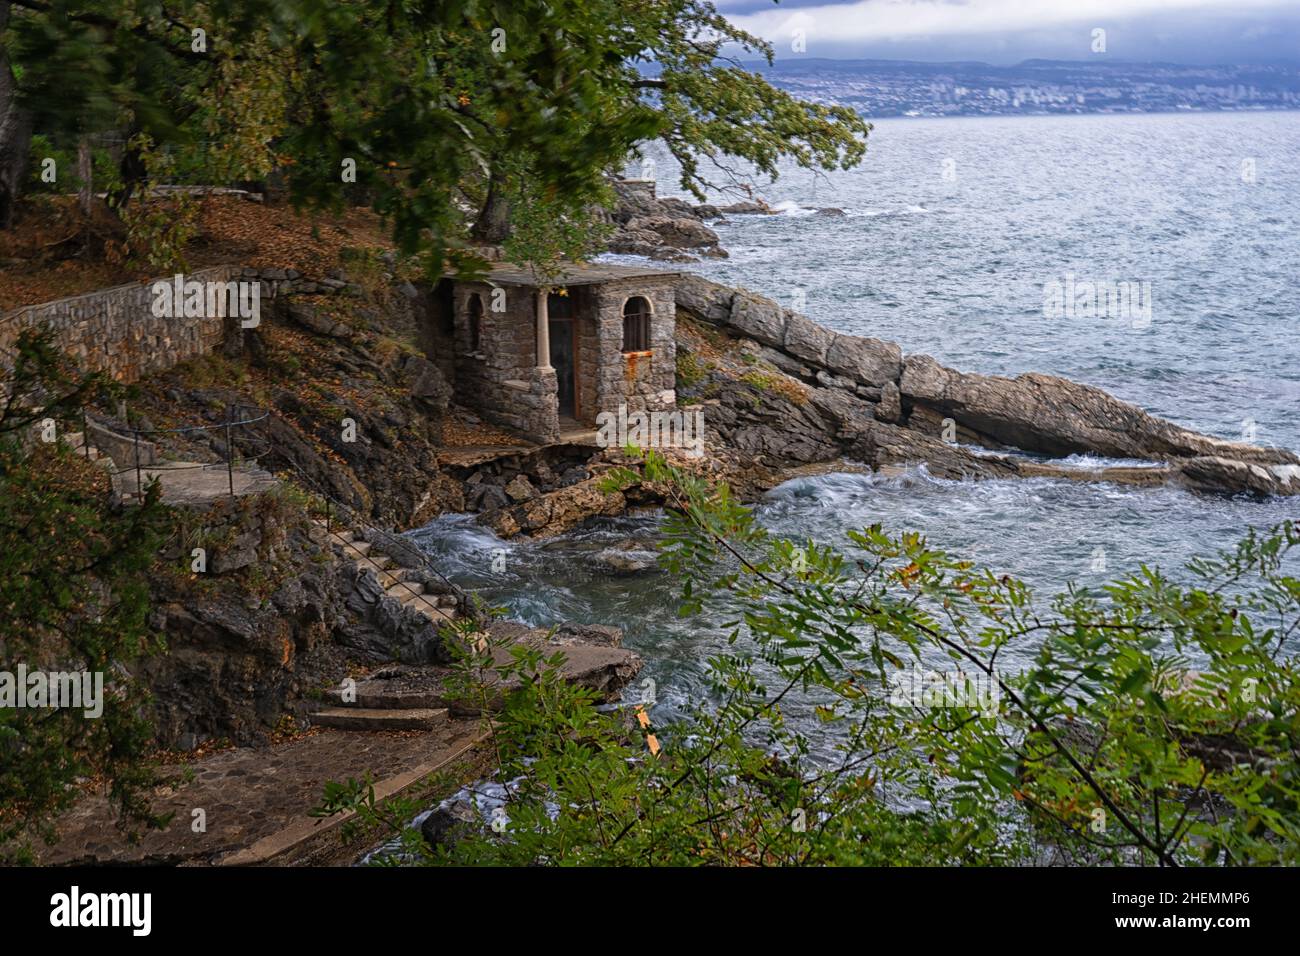 Badeplatz mit Umkleidehütte in einer kleinen Bucht in Opadija, Kroatien Stockfoto